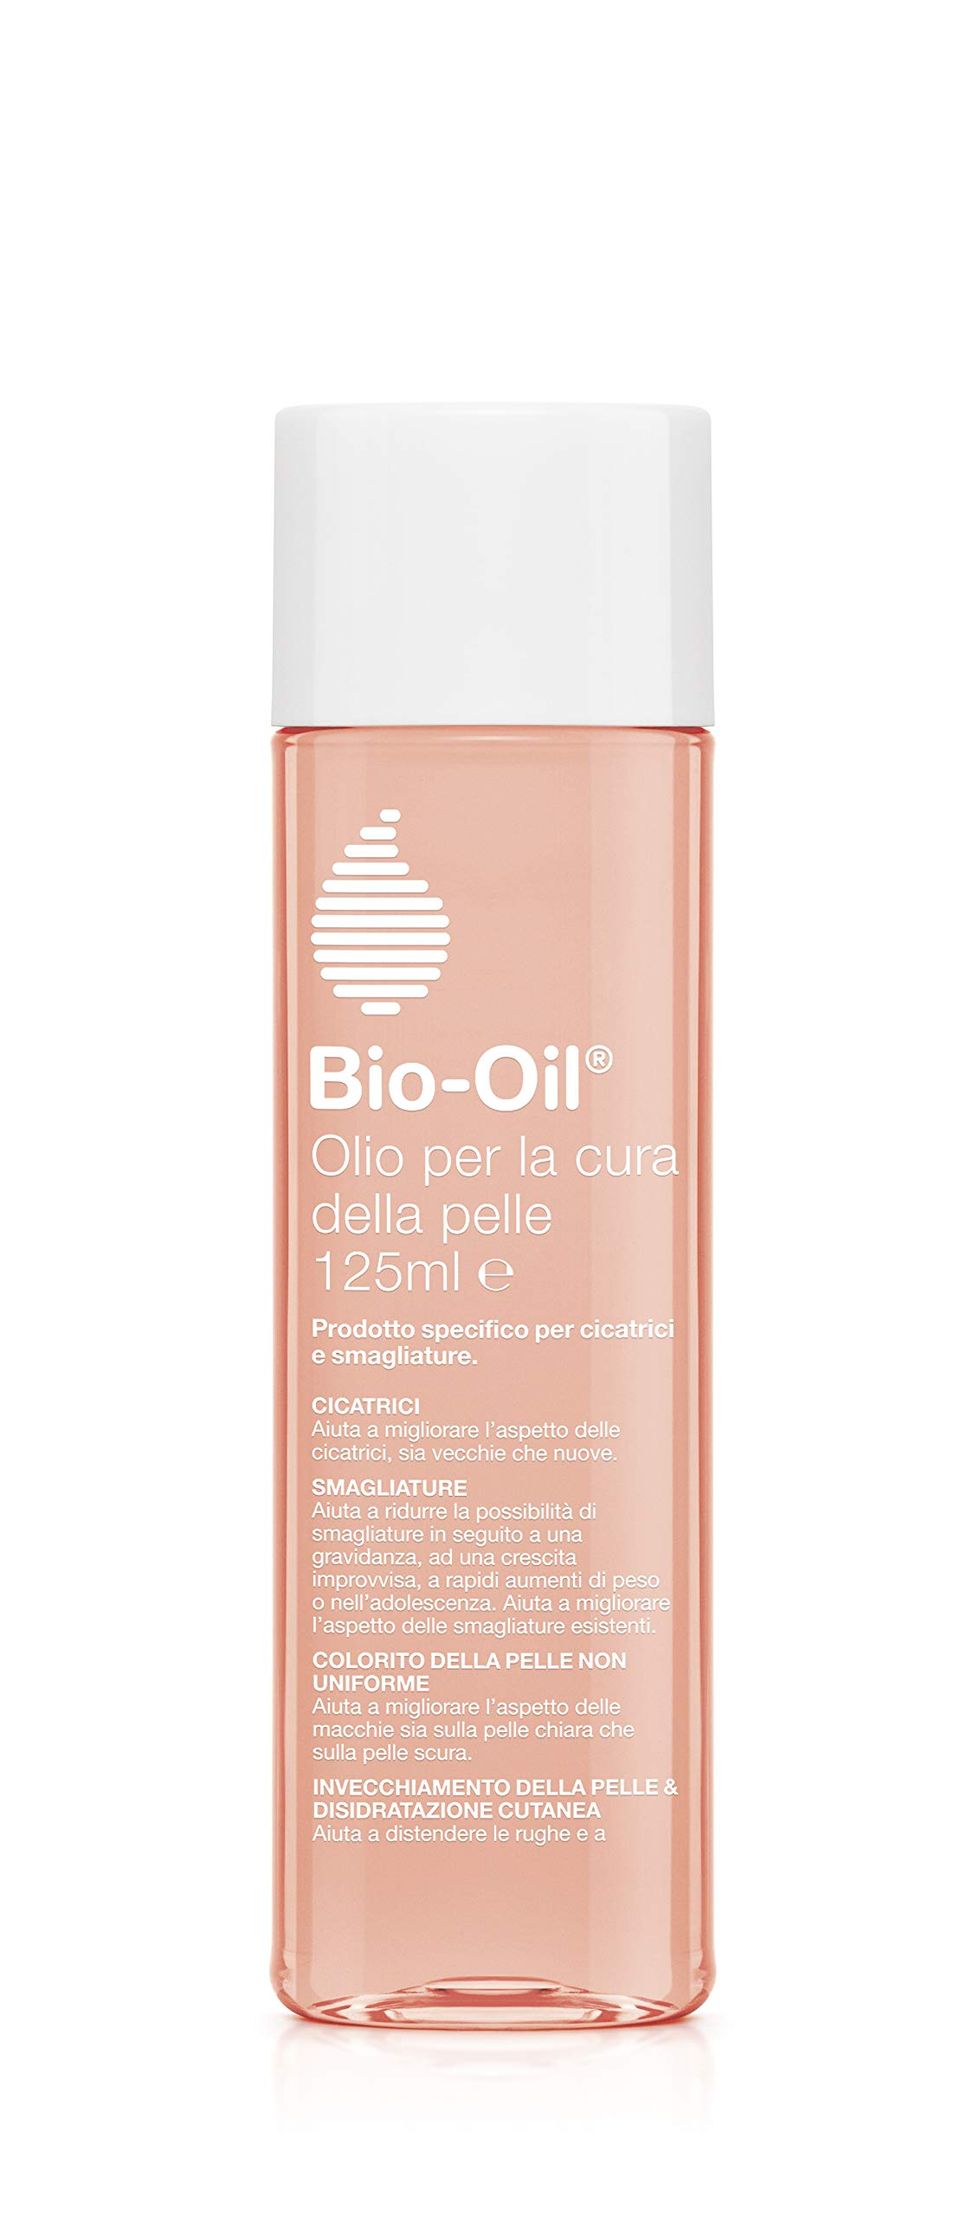 Olio trattamento per la pelle, Bio-Oil